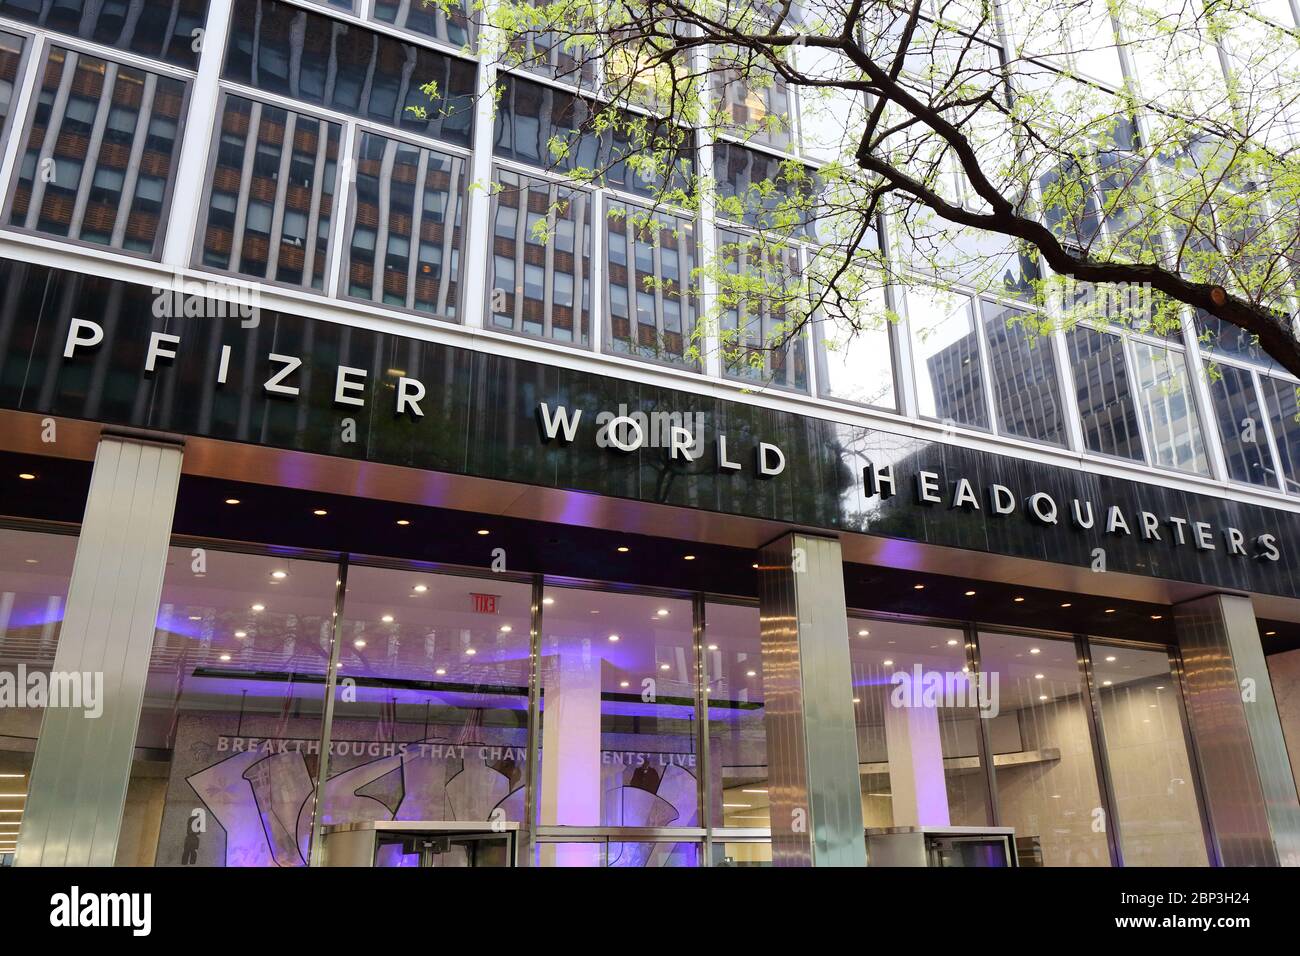 Siège social de Pfizer, 235 E 42nd St, New York, NY. Extérieur d'un immeuble de bureaux pharmaceutiques à Midtown Manhattan. Banque D'Images